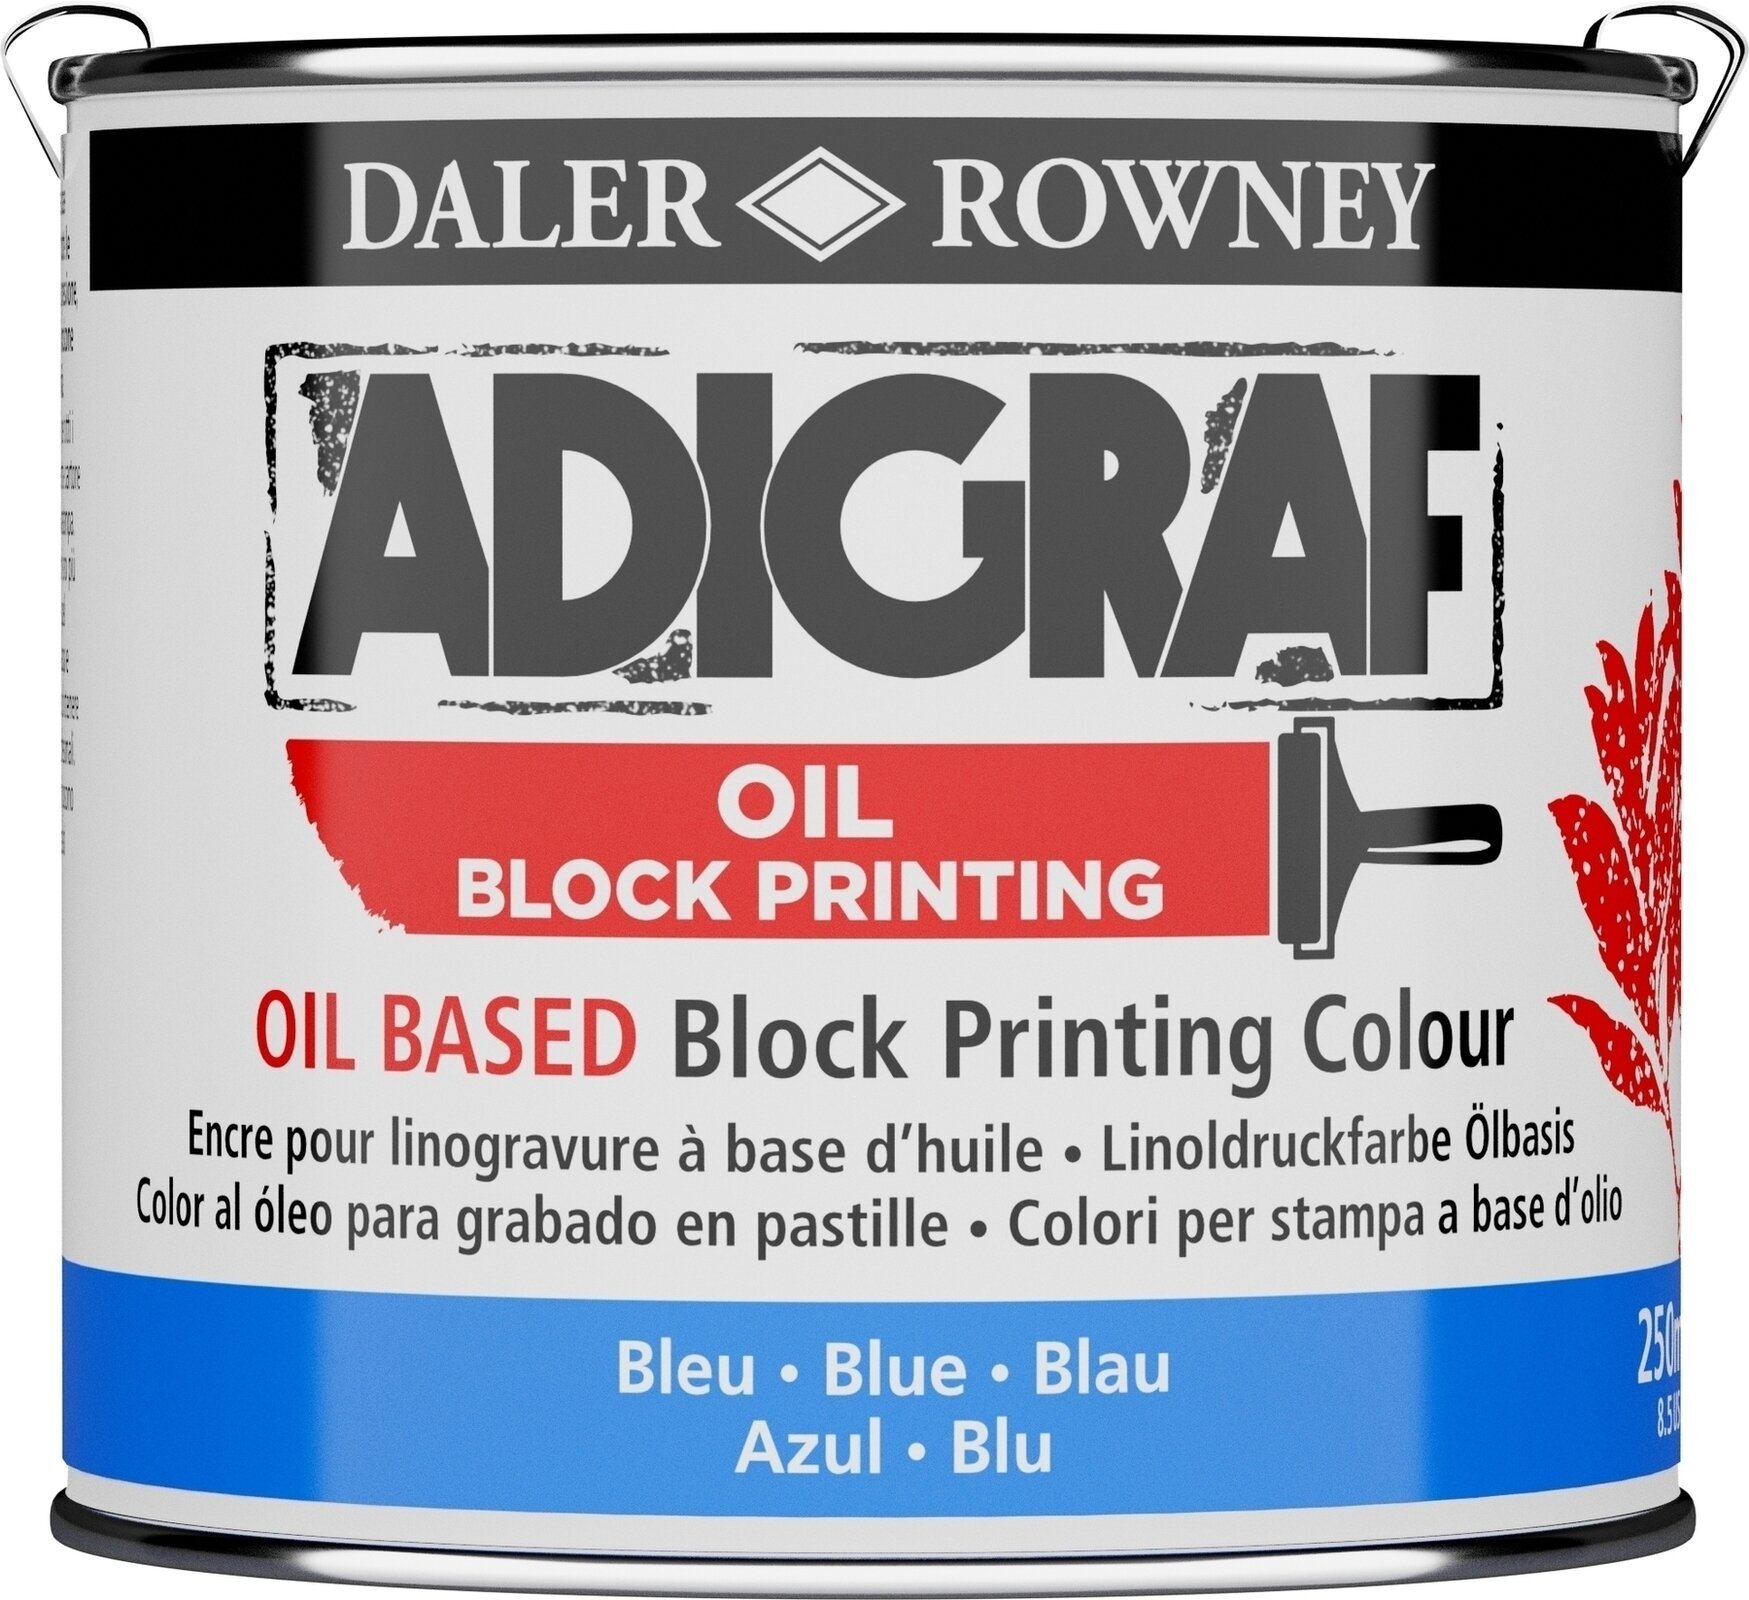 Peintures pour la linogravure Daler Rowney Adigraf Block Printing Oil Peintures pour la linogravure Blue 250 ml